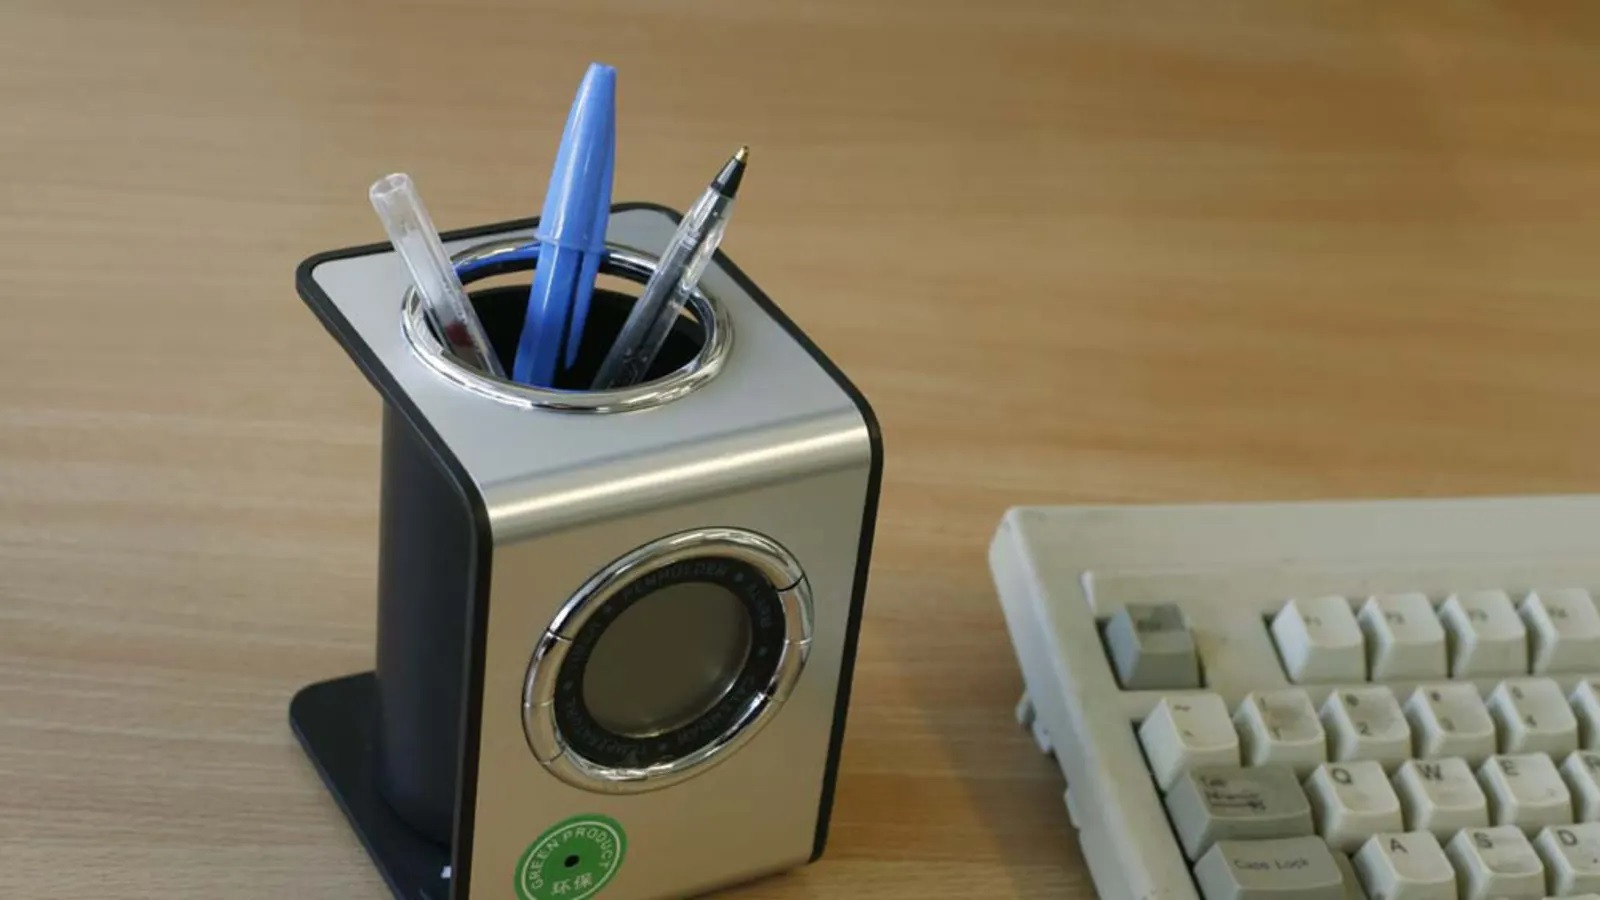 Camera giấu trong một lọ đựng bút, với ống kính nằm ở phần tem màu xanh. Những lọ bút này có thể được đặt sẵn trong các phòng cho thuê, với phần ống kính hướng về giường ngủ.